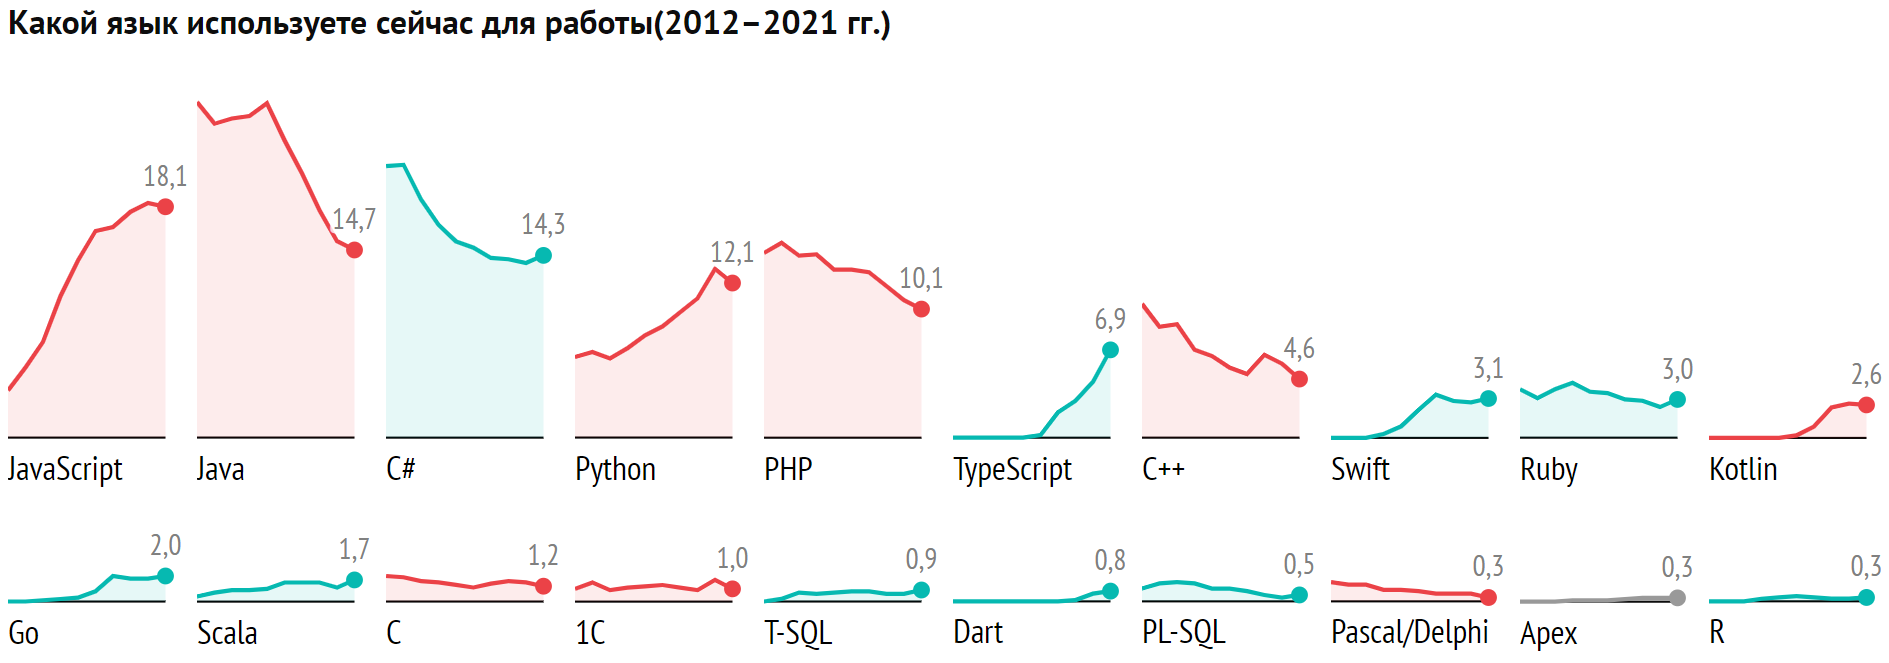 Рейтинг языков программирования 2021: доля Python падает, а TypeScript обошел С++, в лидерах JavaScript, Java, C# - 2